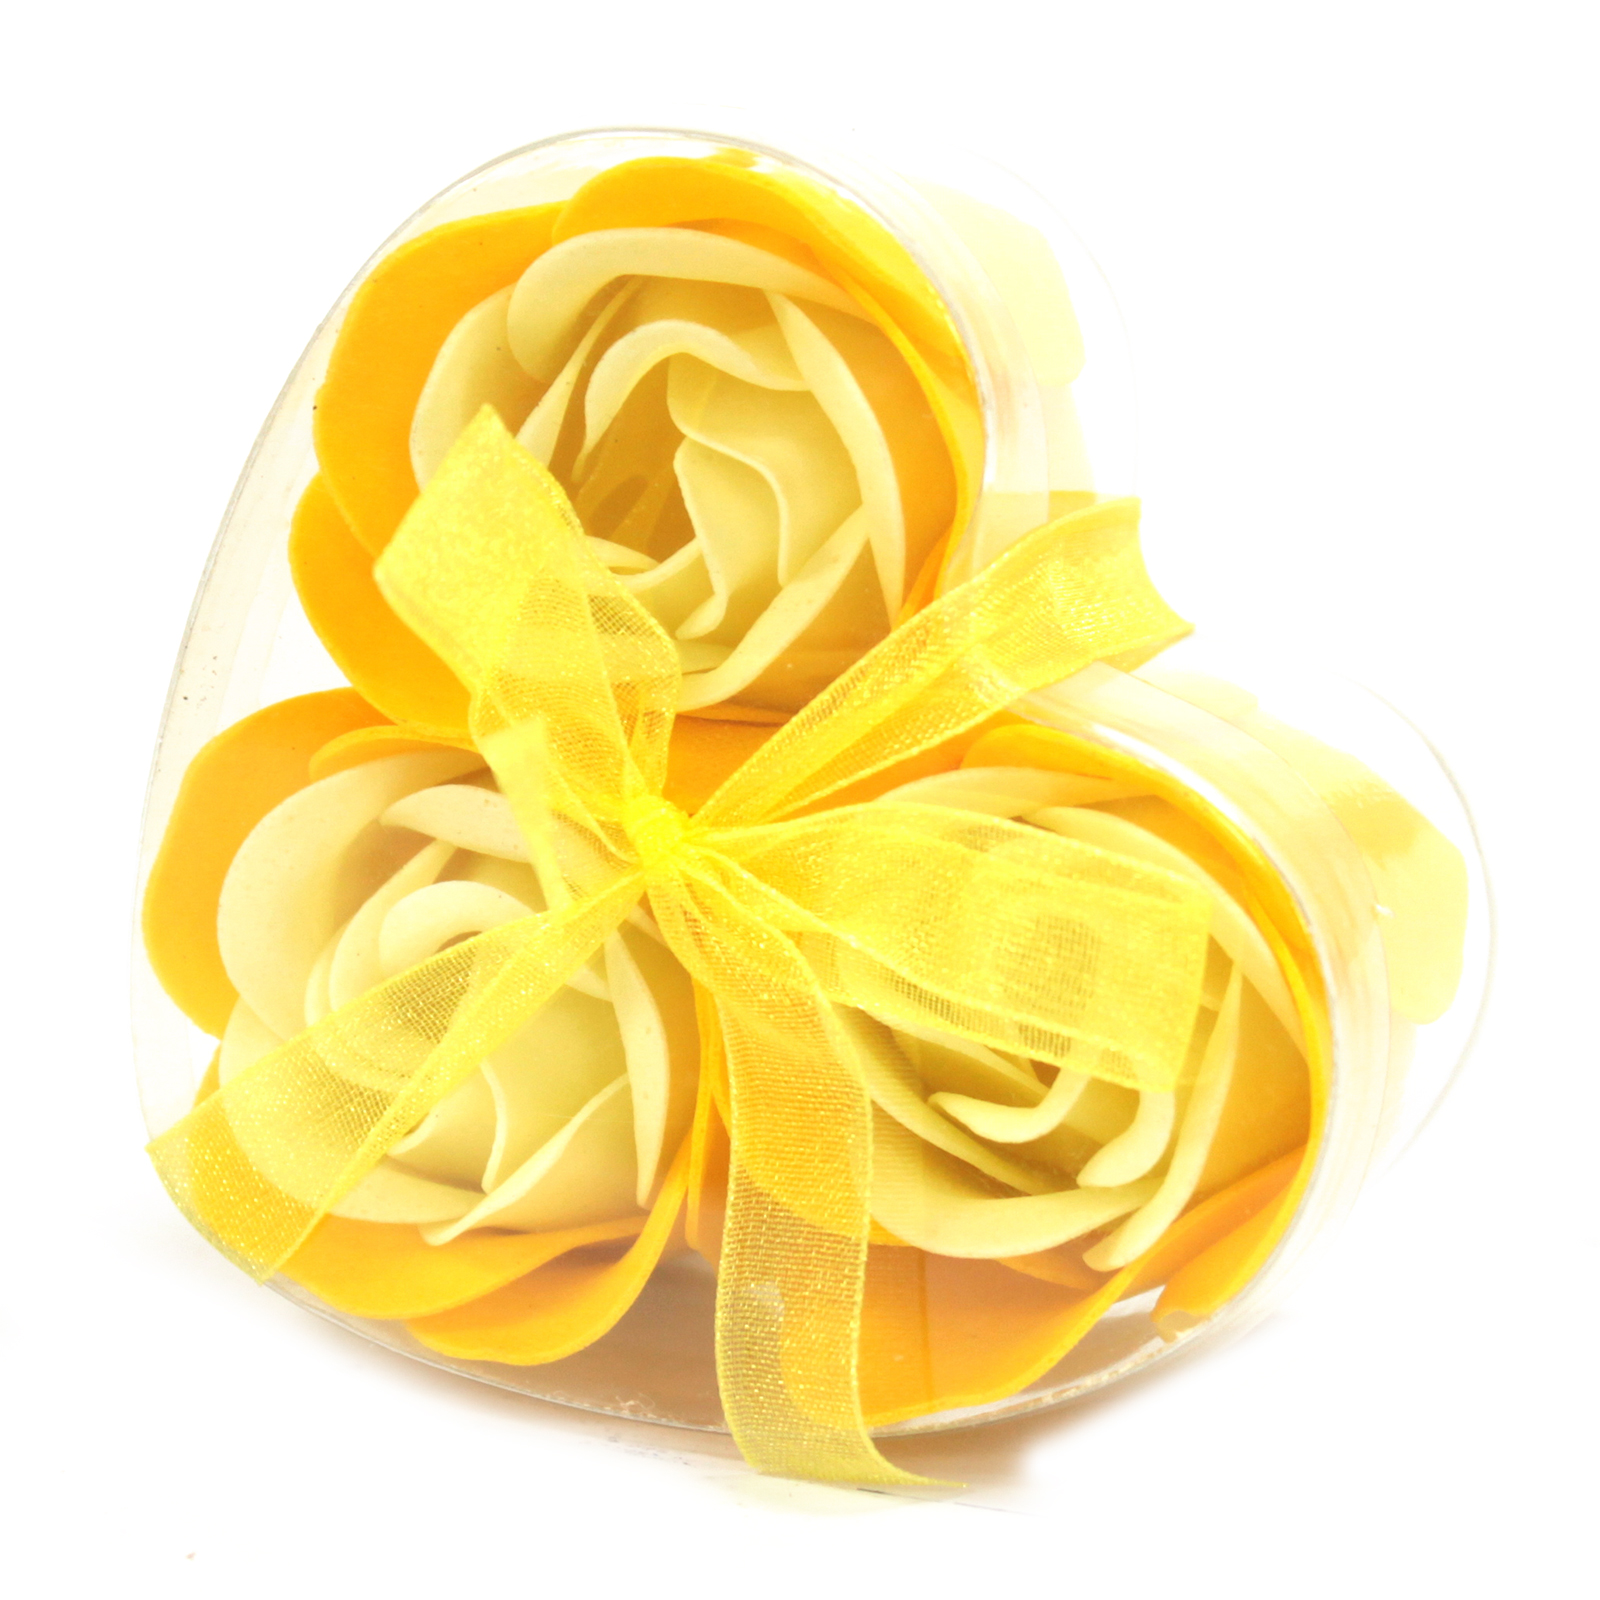 1x Set of 3 Soap Flower Heart Box - Spring Roses